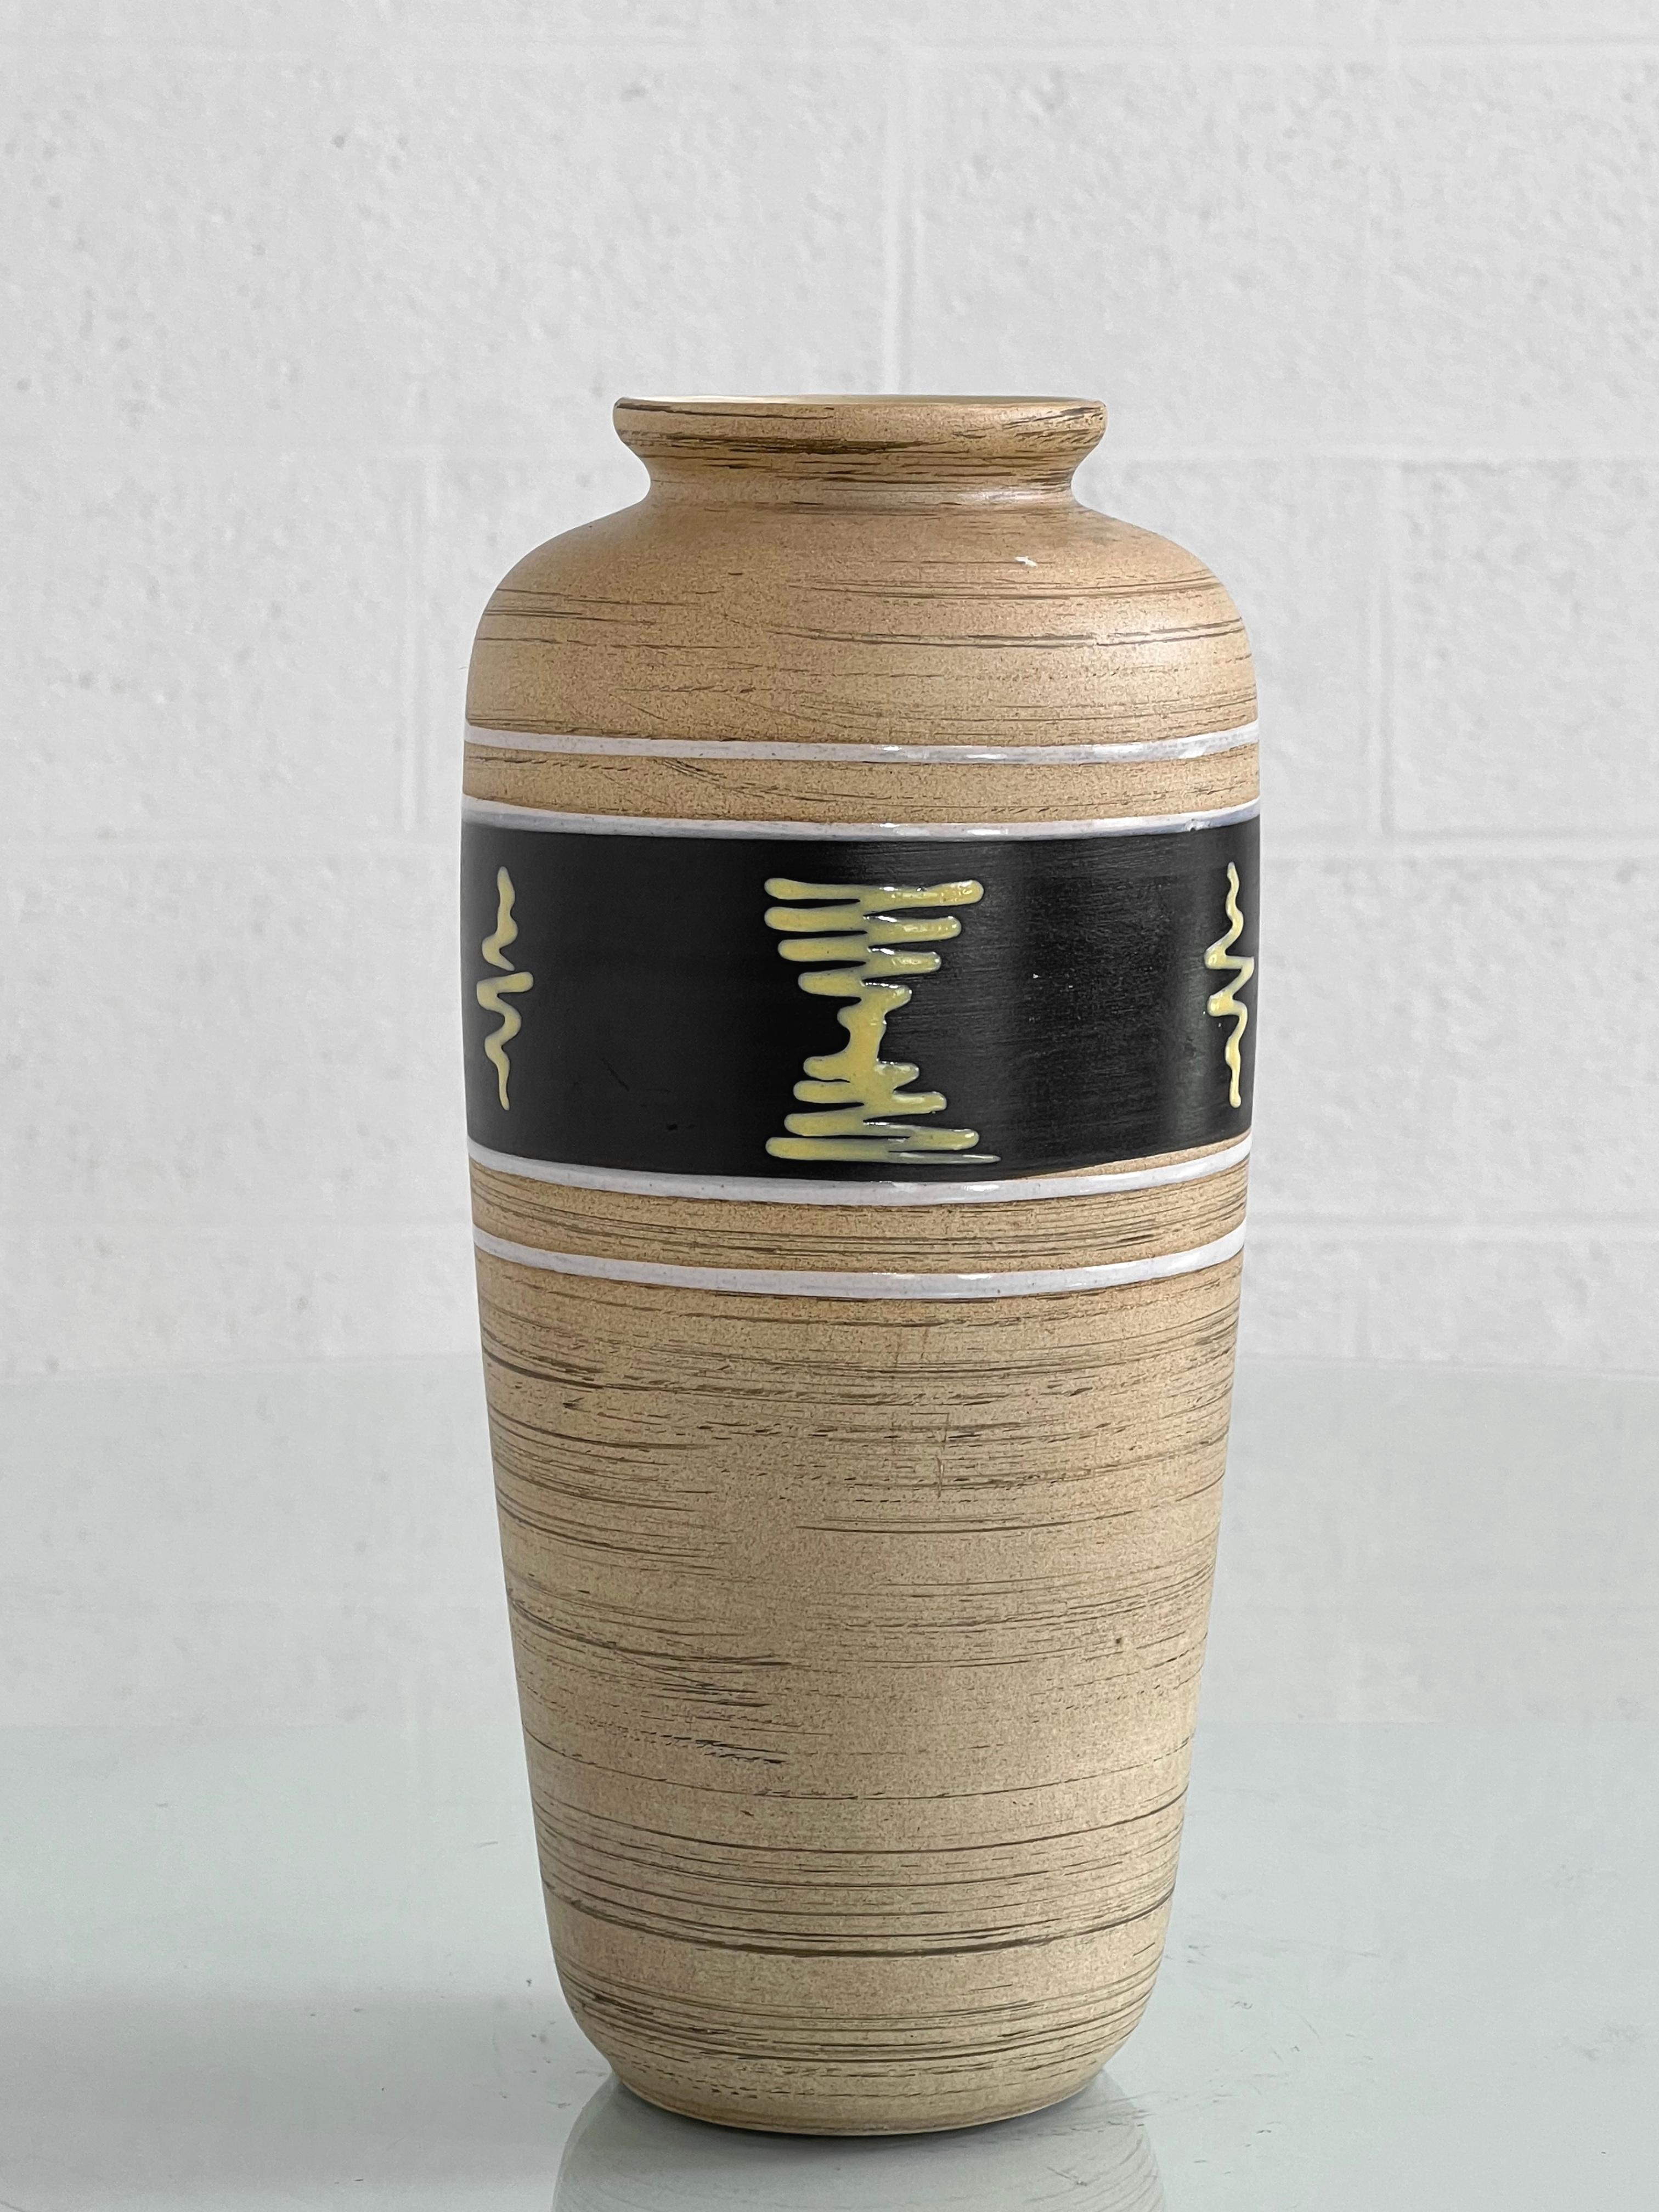 Vase en céramique fait à la main dans les années 1960 en Allemagne de l'Ouest, de couleur beige et noire 